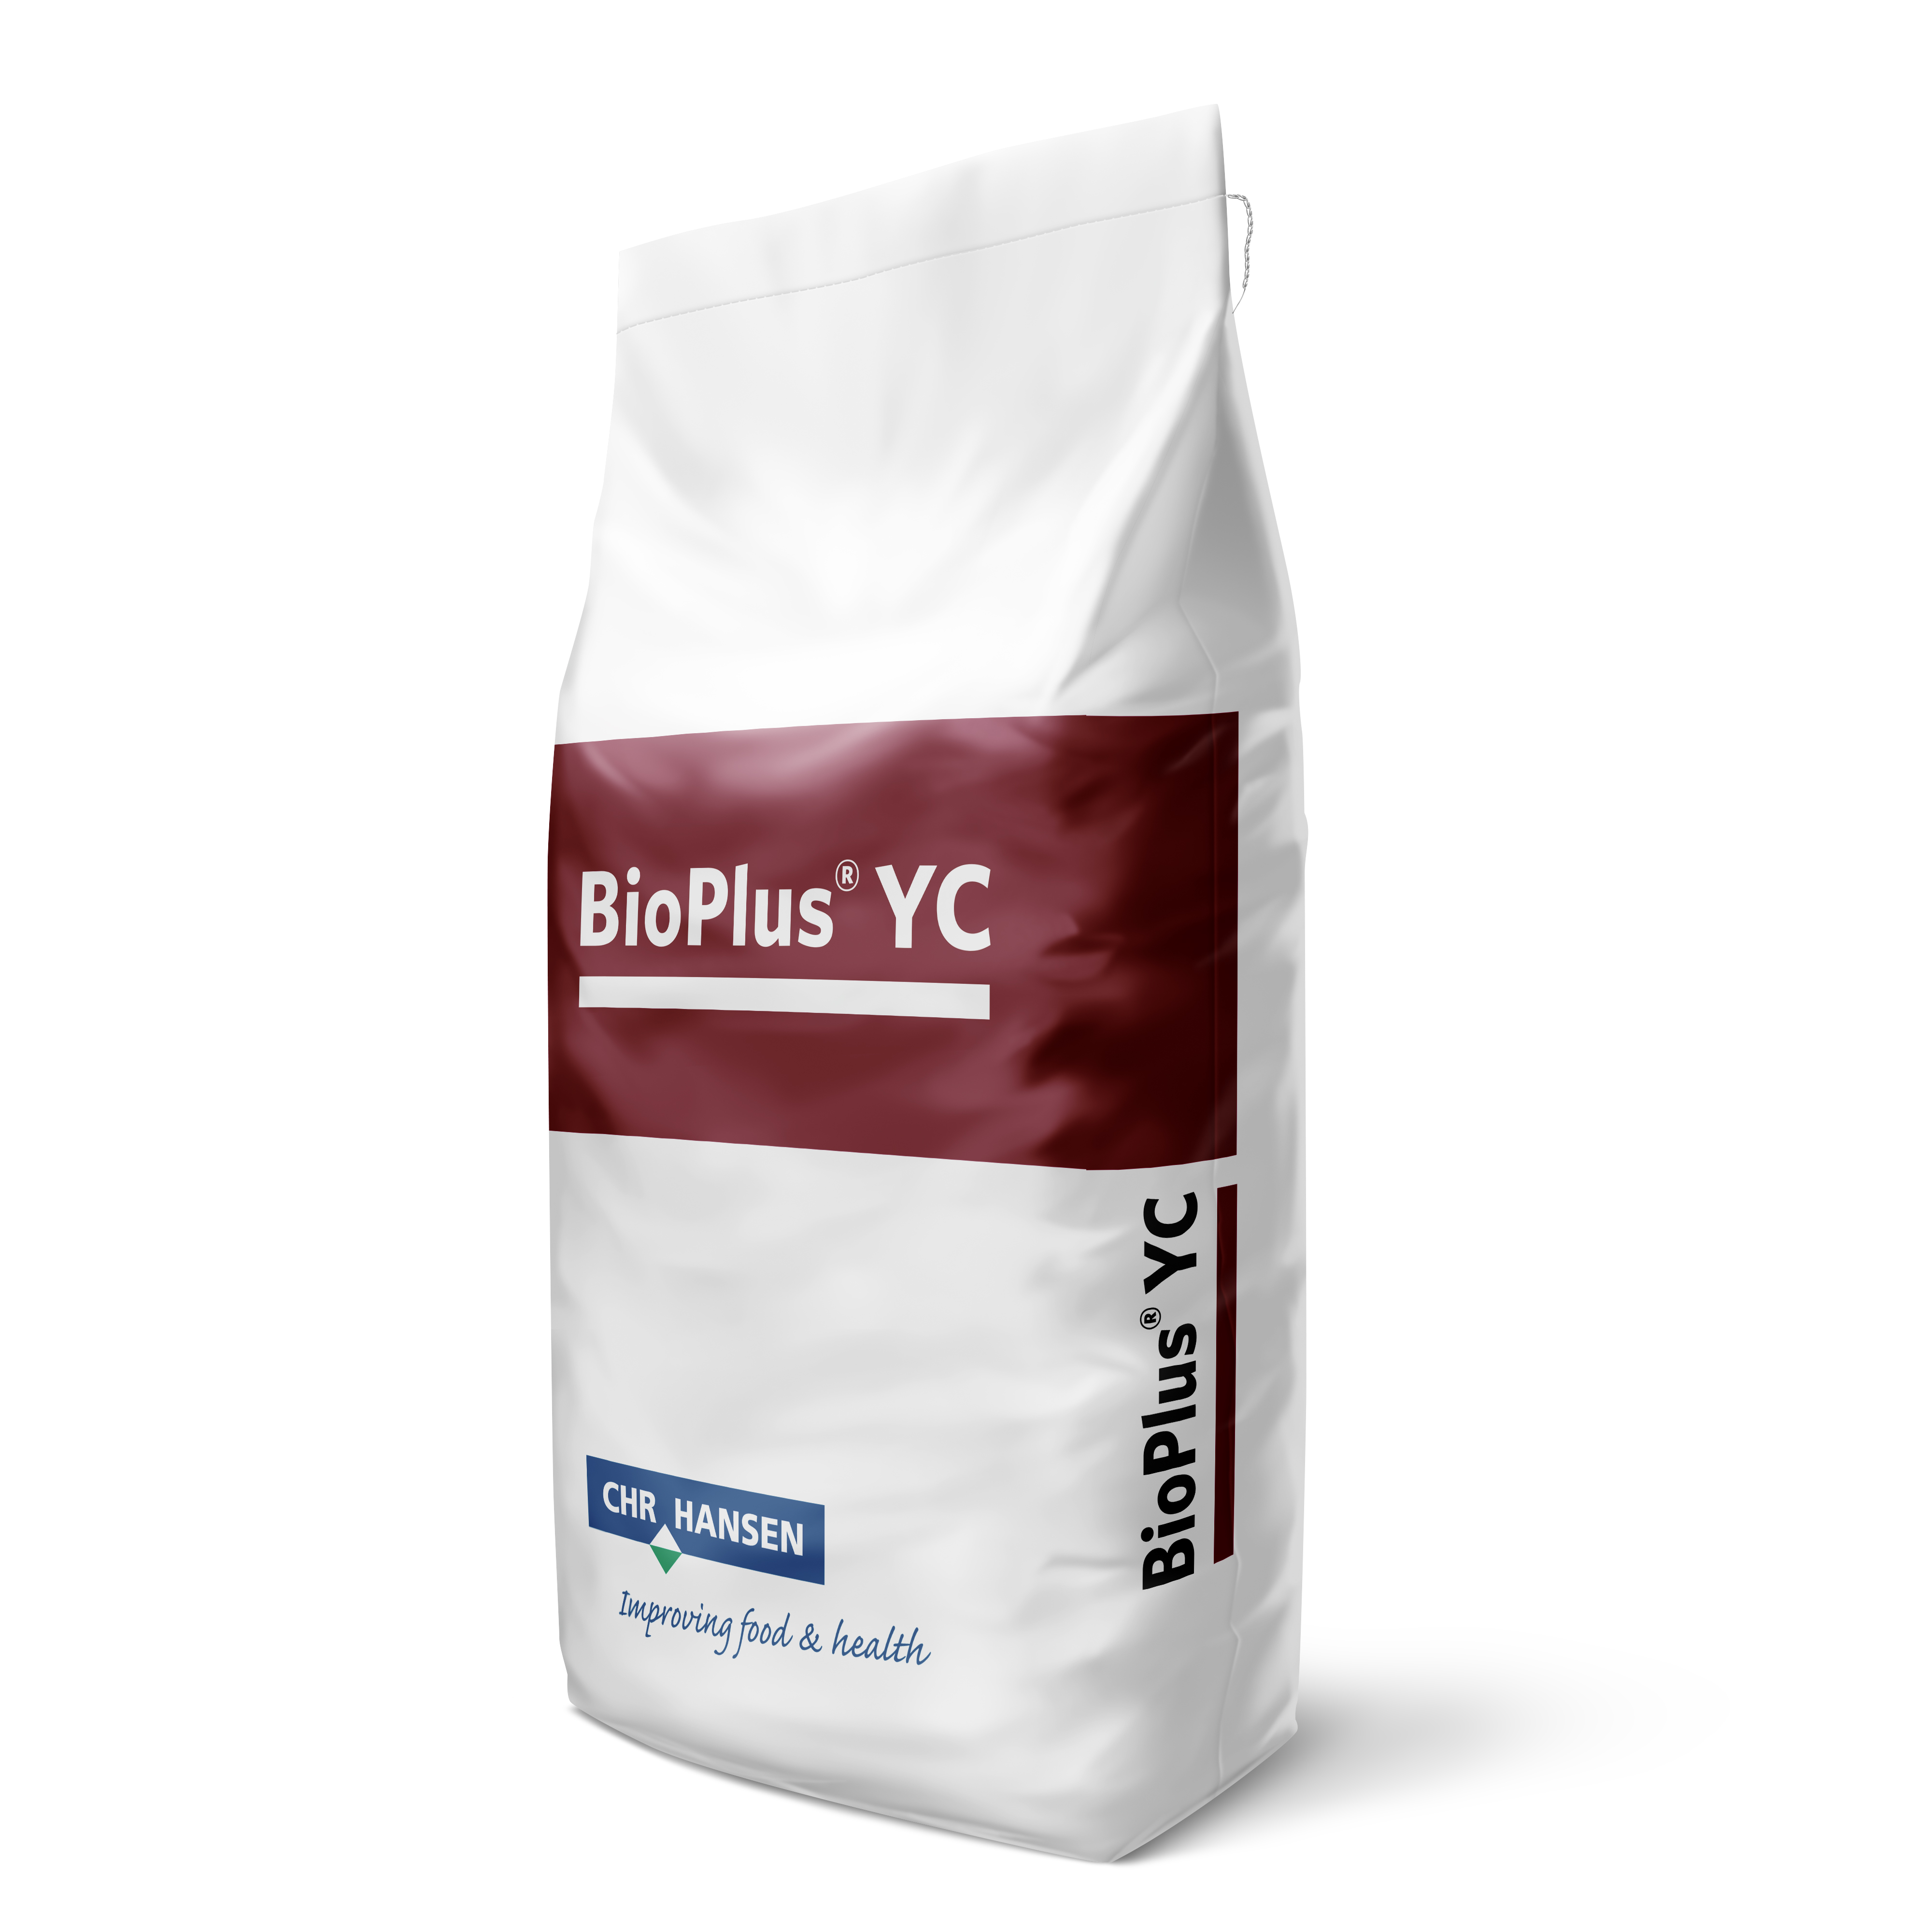 BioplusYC packaging